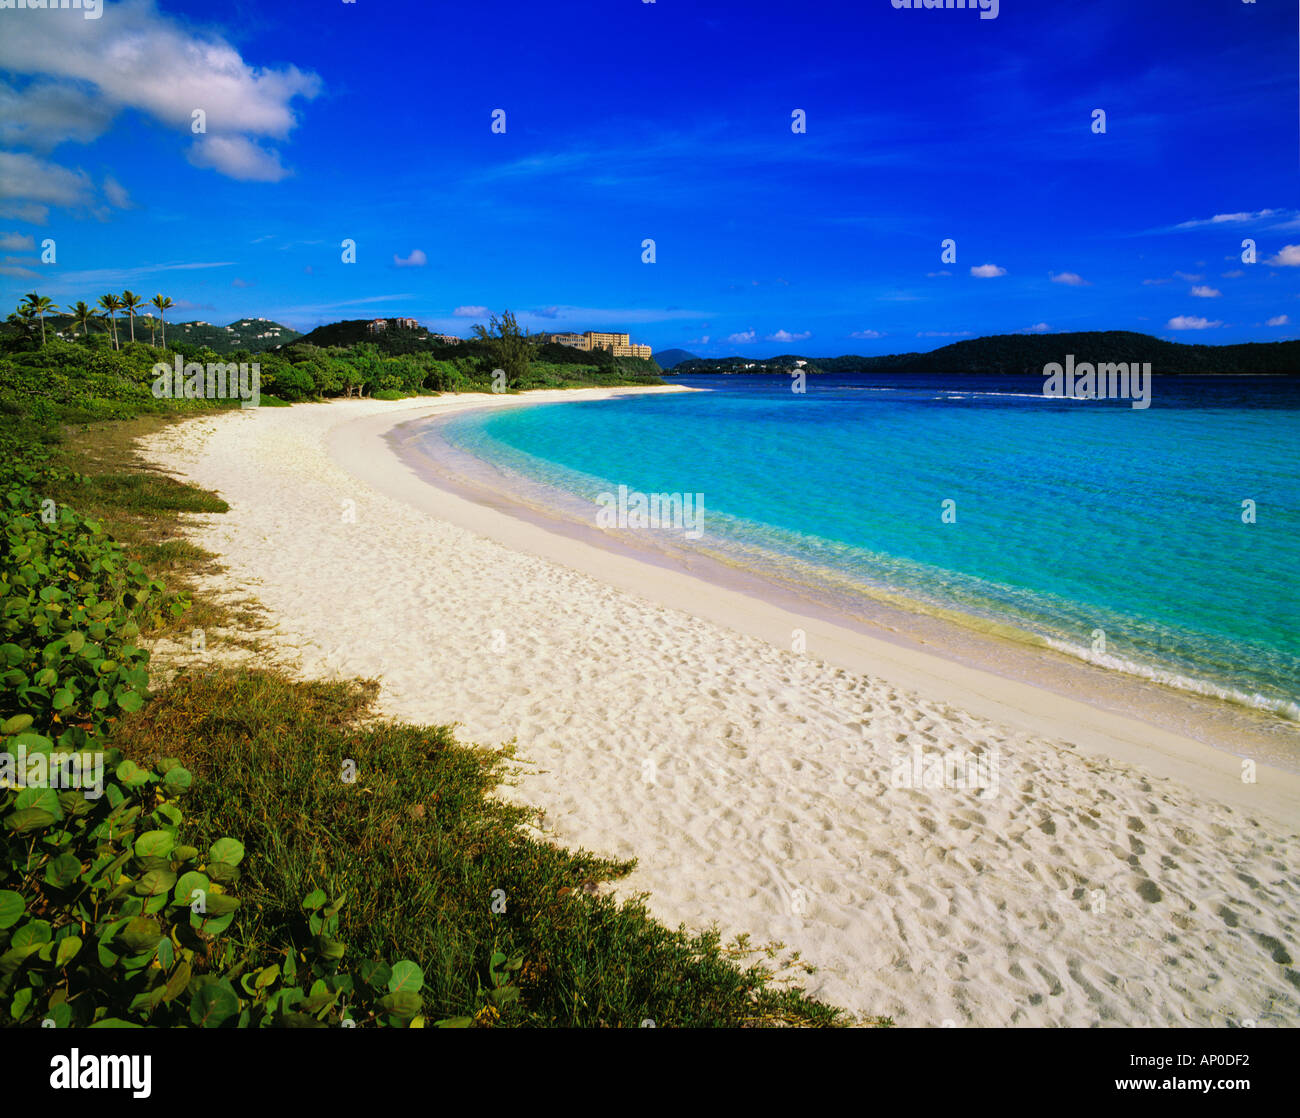 Sabbia bianca e mare turchese e verde e lussureggiante vegetazione al di sotto di un luminoso cielo blu a Lundquist Beach St Thomas Isole Vergini Americane Foto Stock